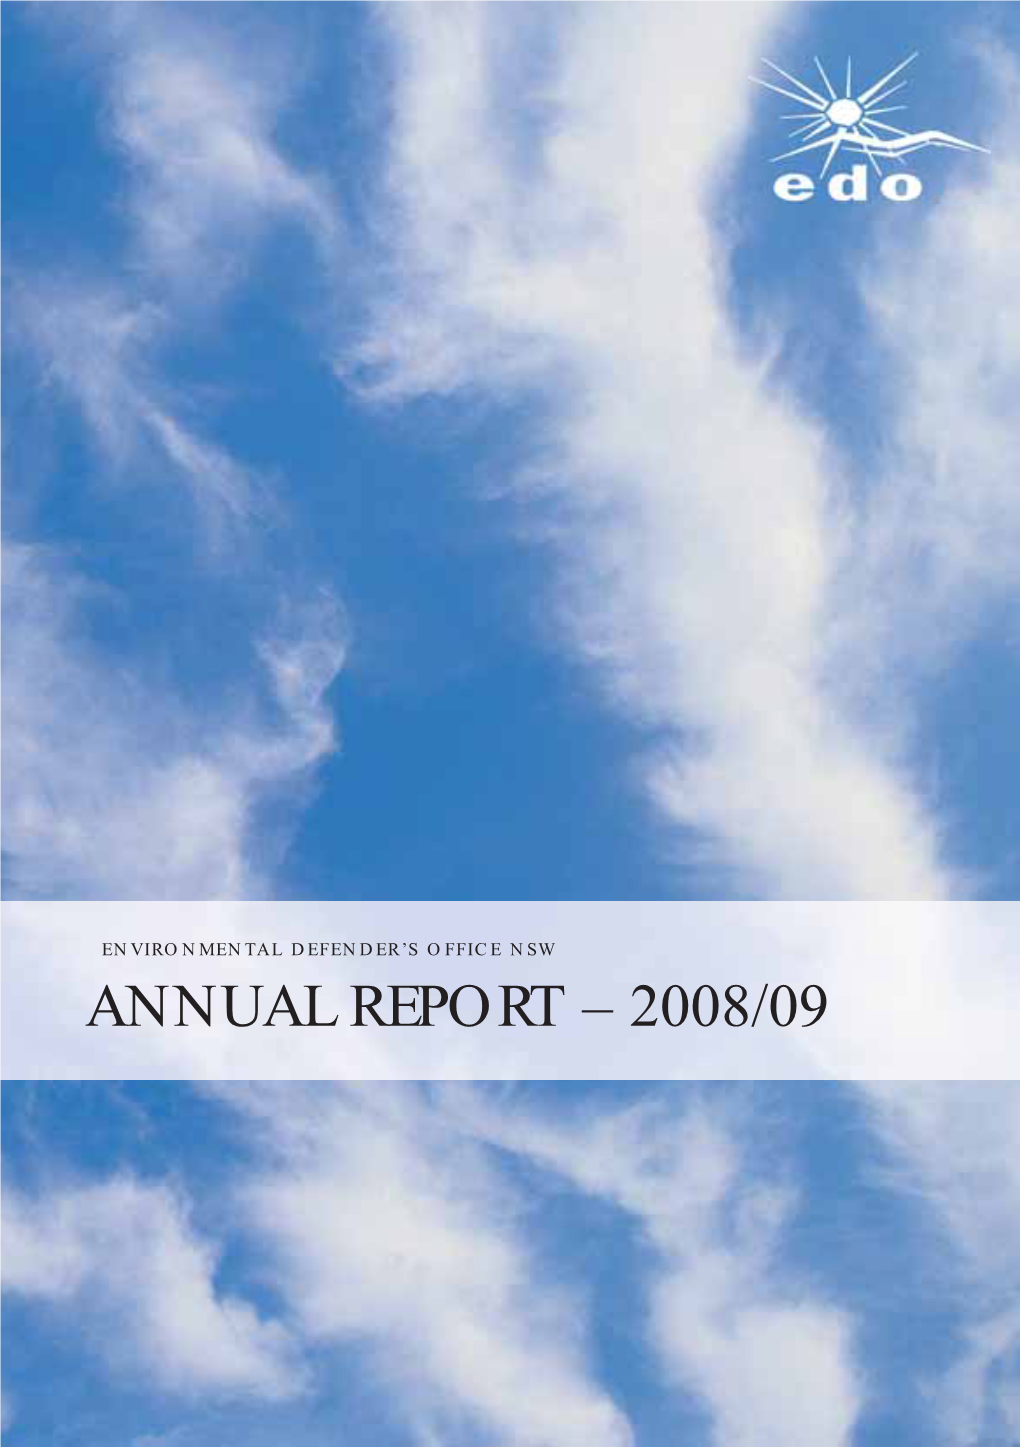 ANNUAL REPORT – 2008/09 Edo